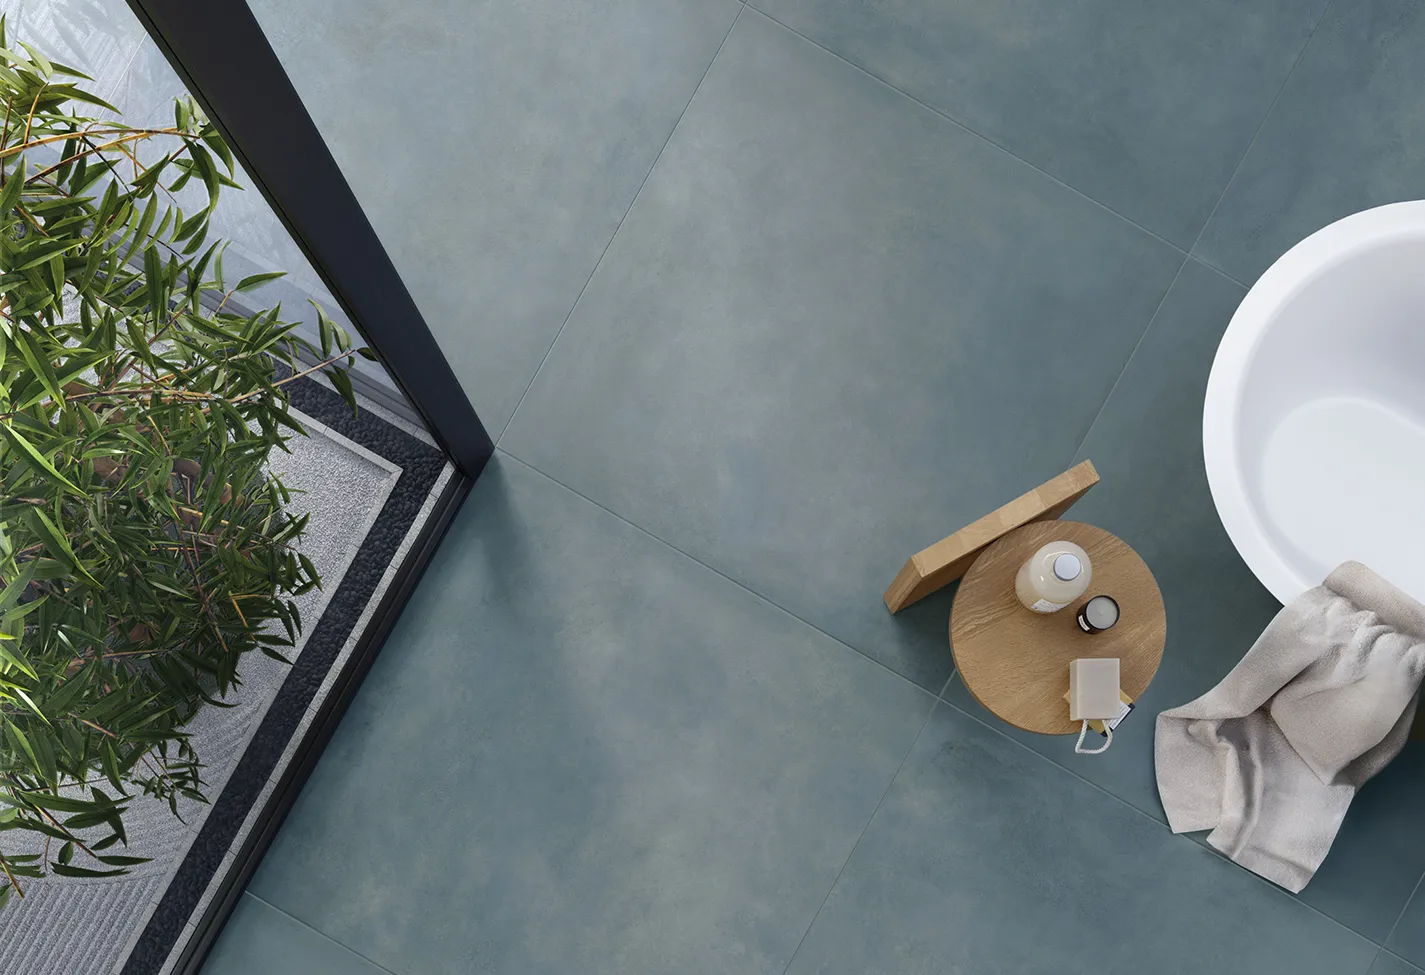 Bagno spazioso con pavimento effetto metallo colore titanium e pareti colore Plate Tin dalla collezione Plate, vasca indipendente e vanità moderna.